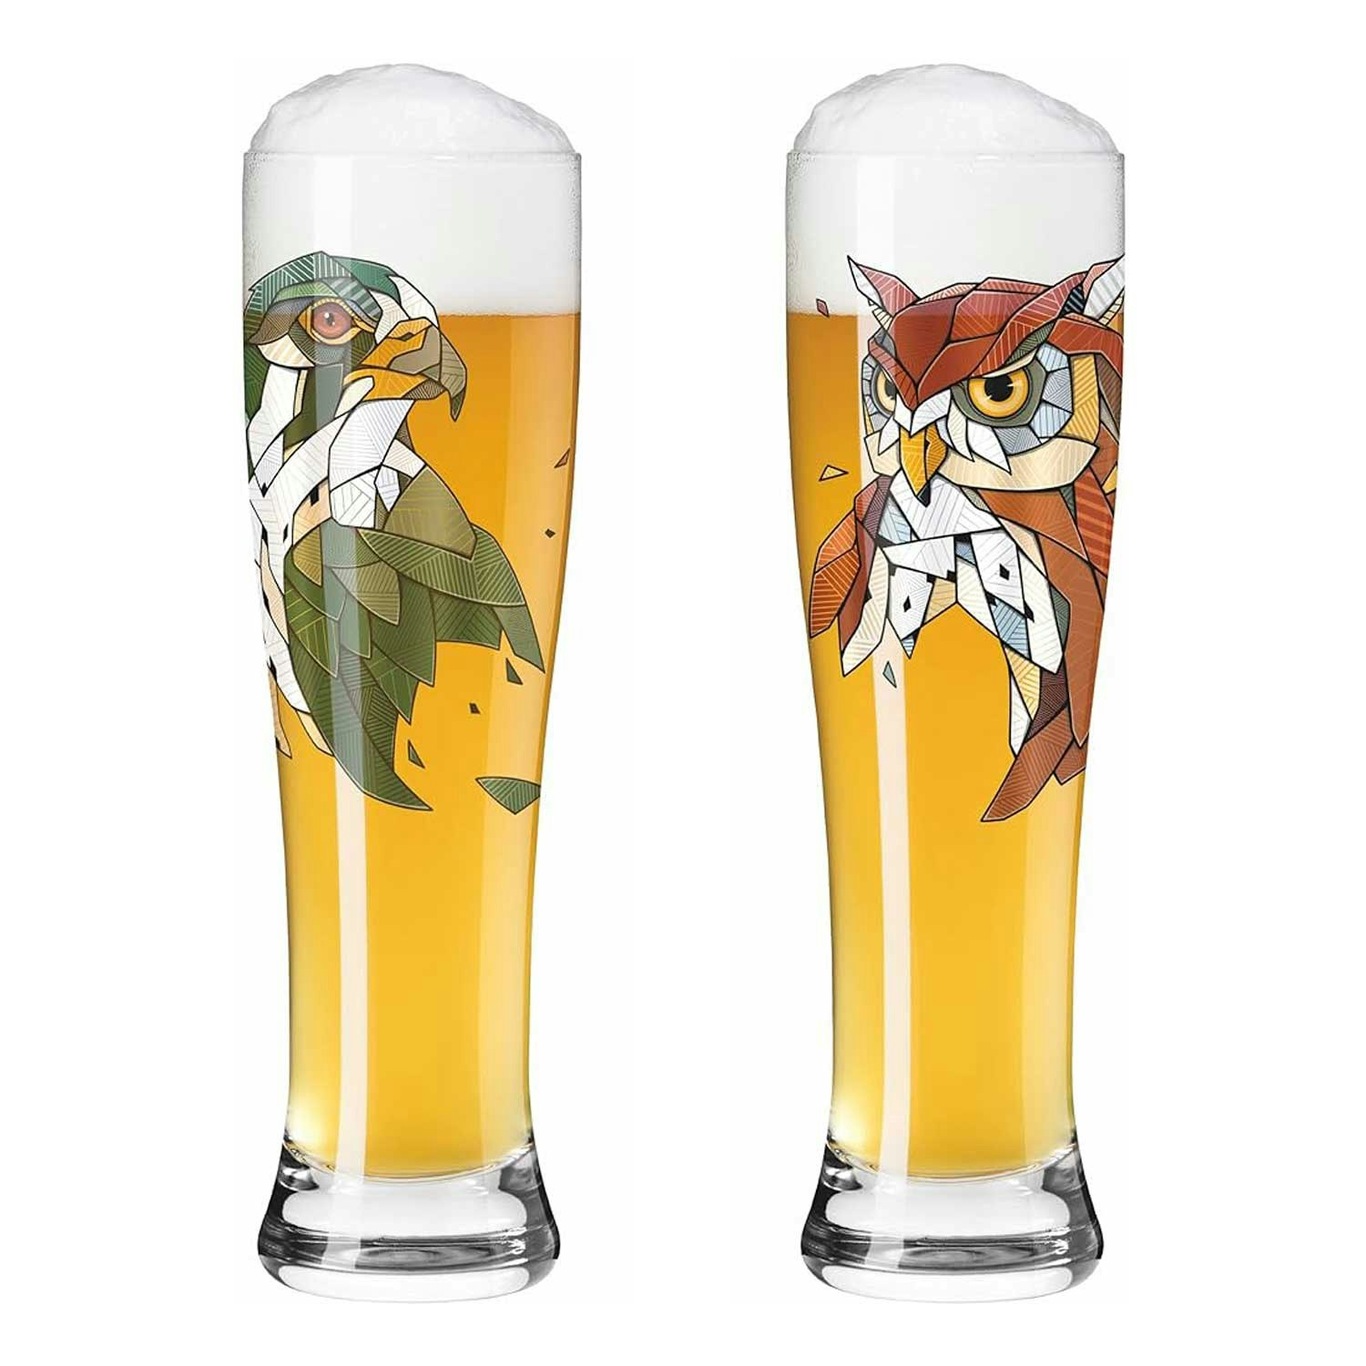 Brauchzeit Beer Glasses 2-pack, F23